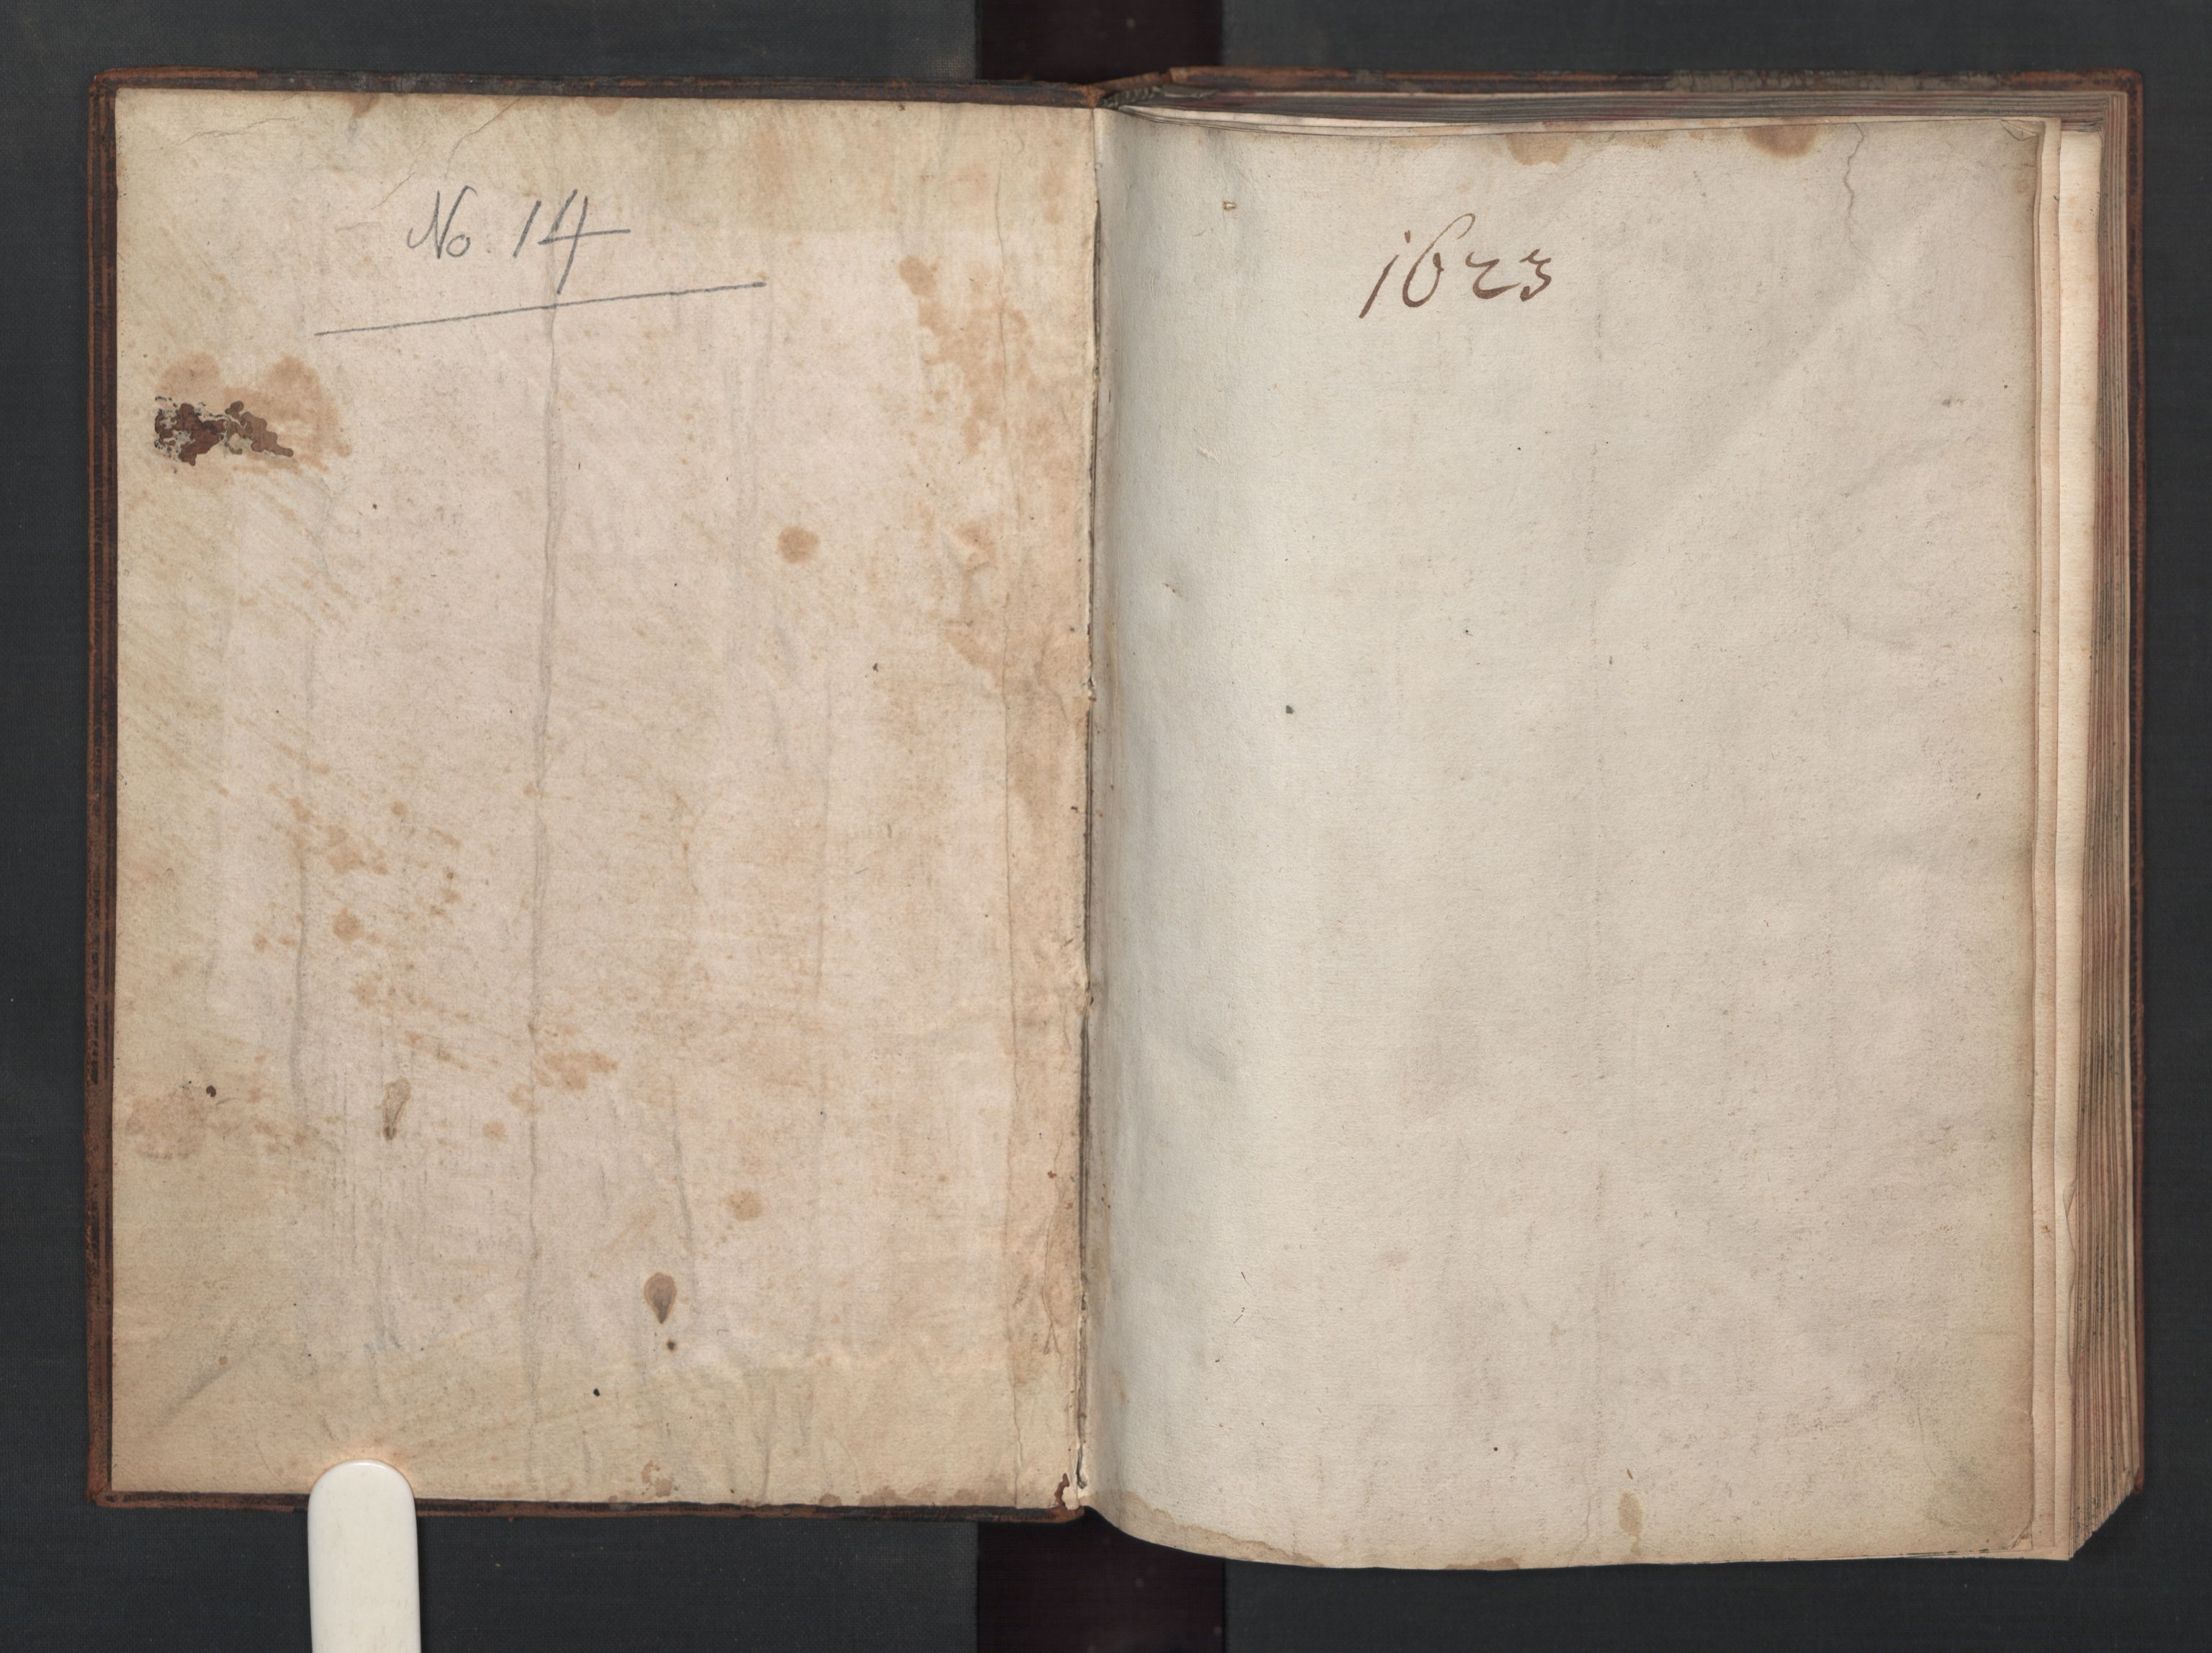 Herredagen 1539-1664  (Kongens Retterting), RA/EA-2882/A/L0014: Dombok, 1623